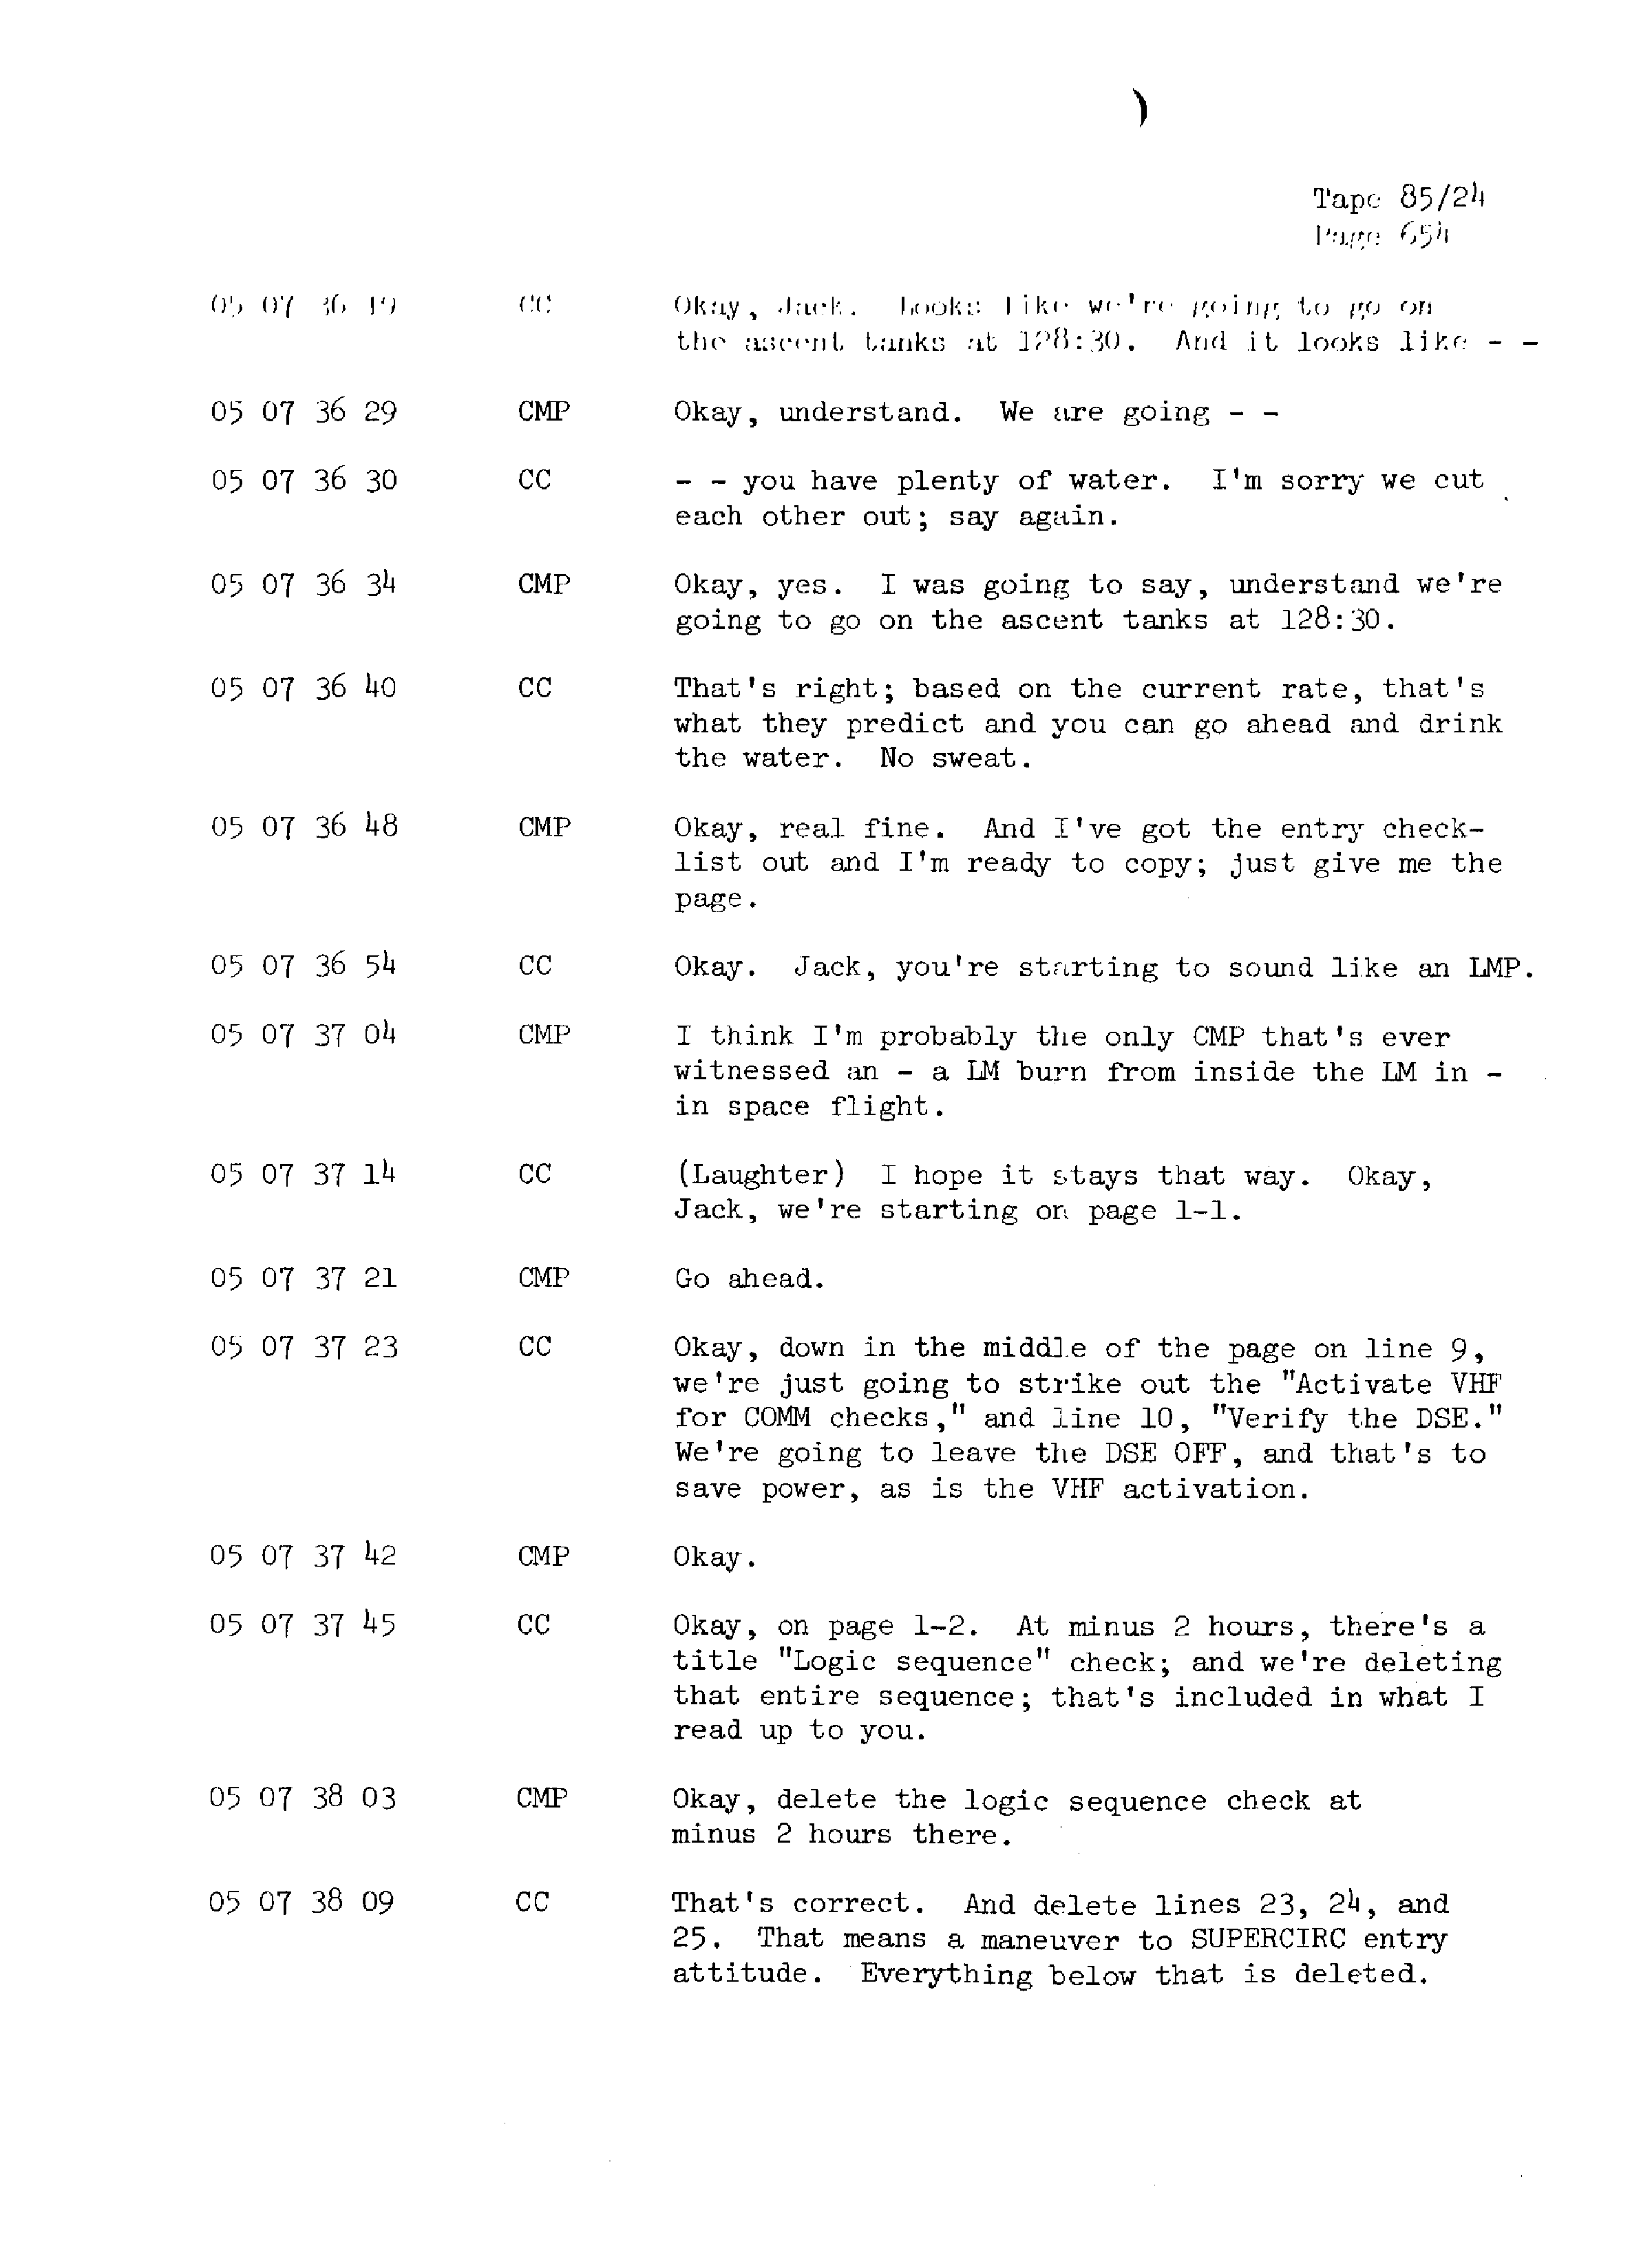 Page 661 of Apollo 13’s original transcript